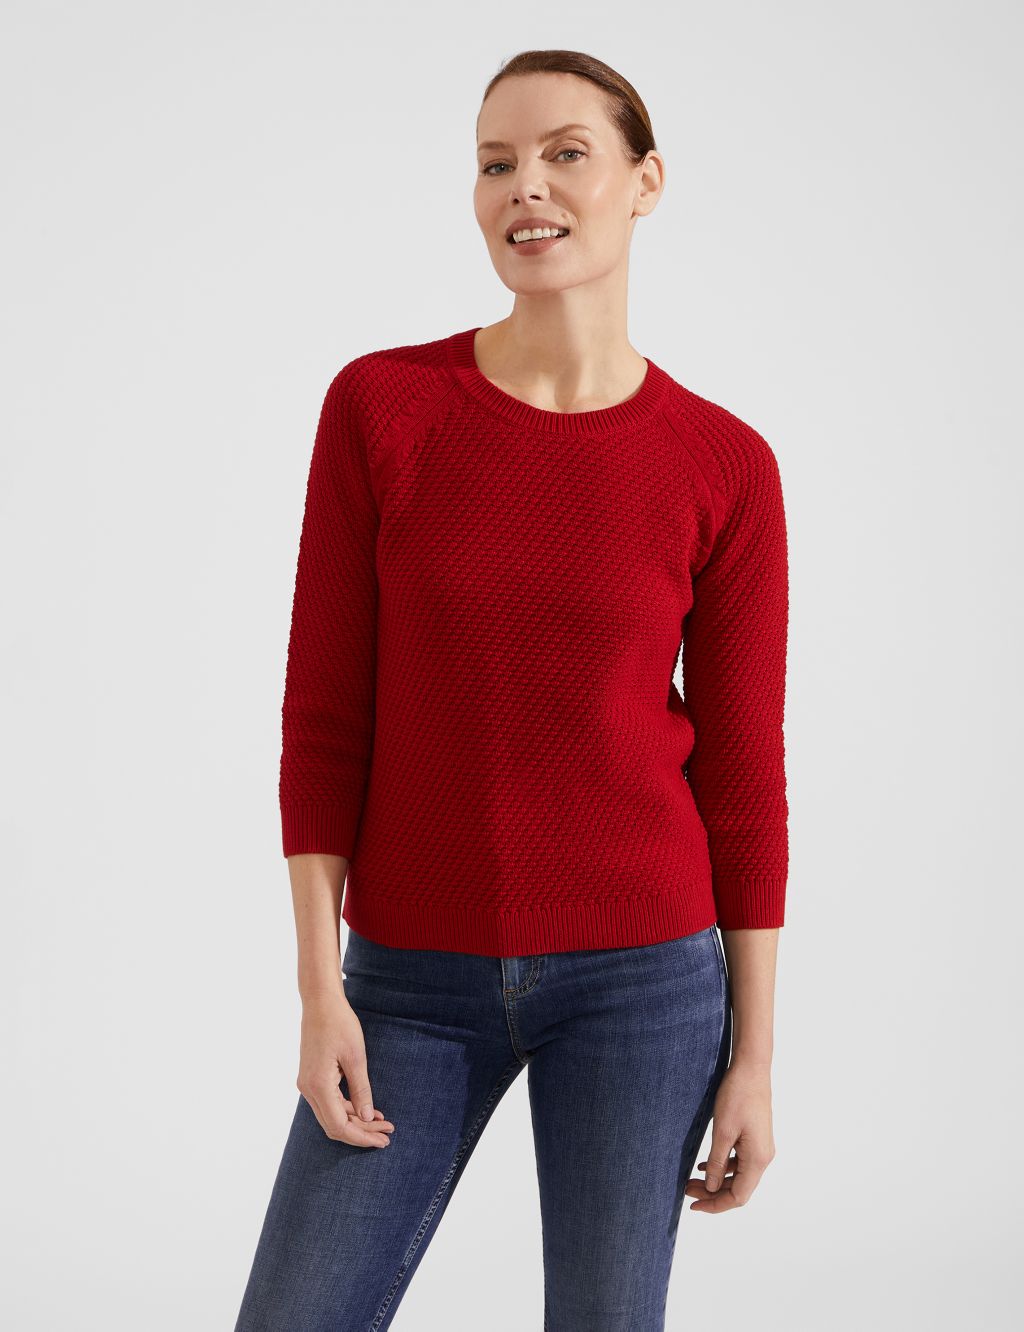 Women’s Red Knitwear | M&S